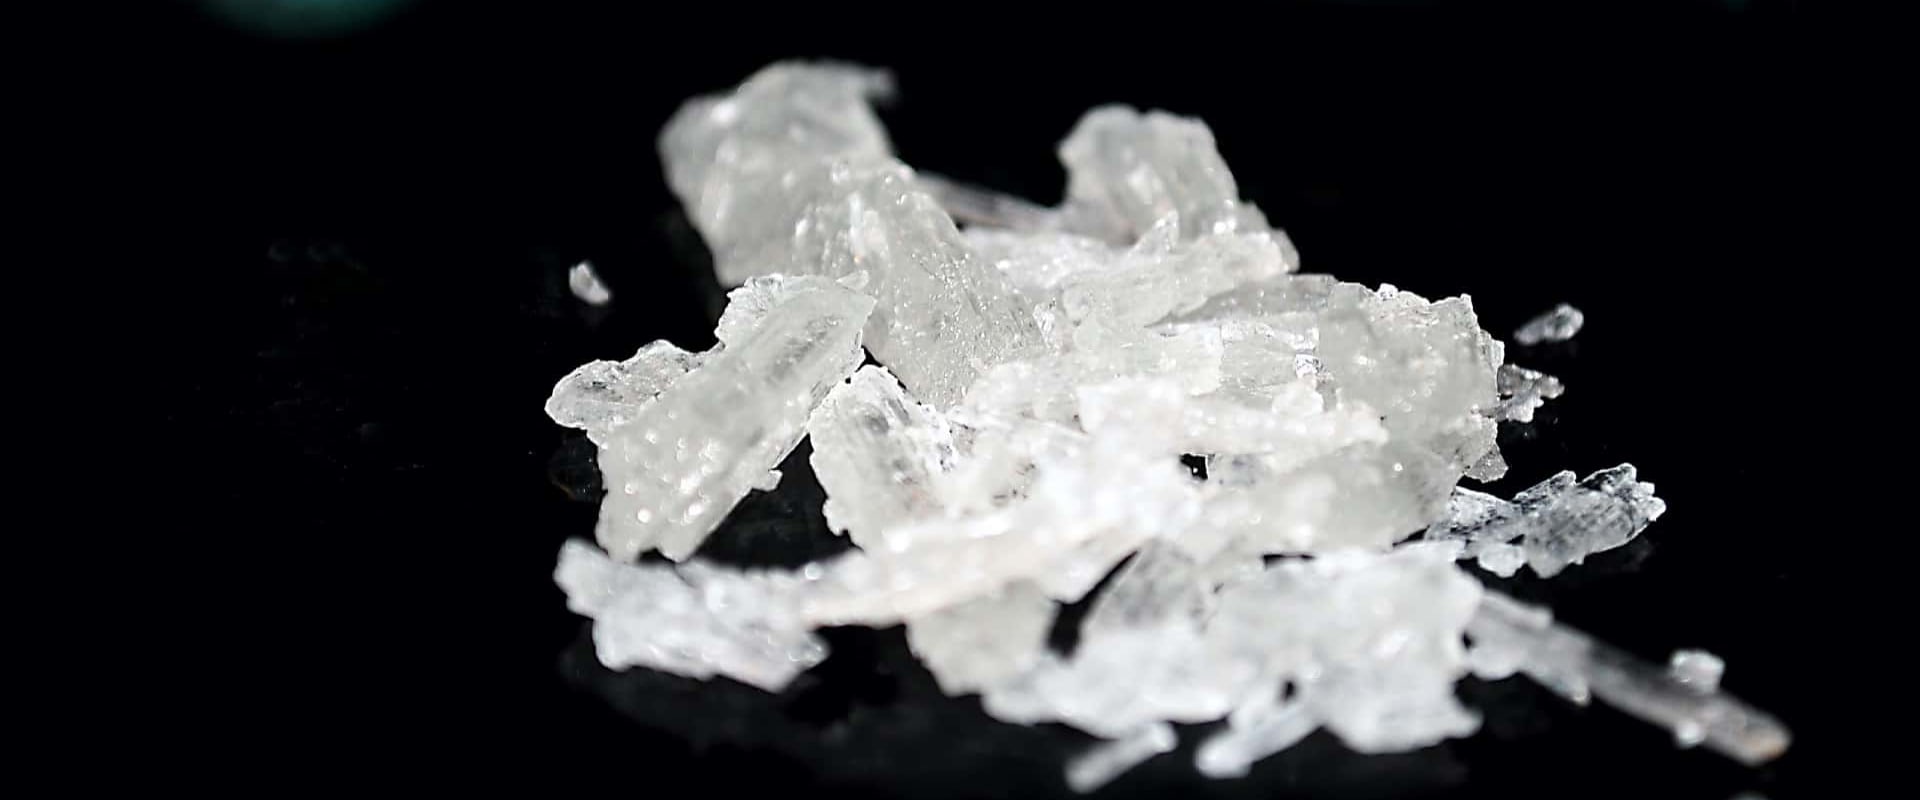 Is crystal meth legal in california?